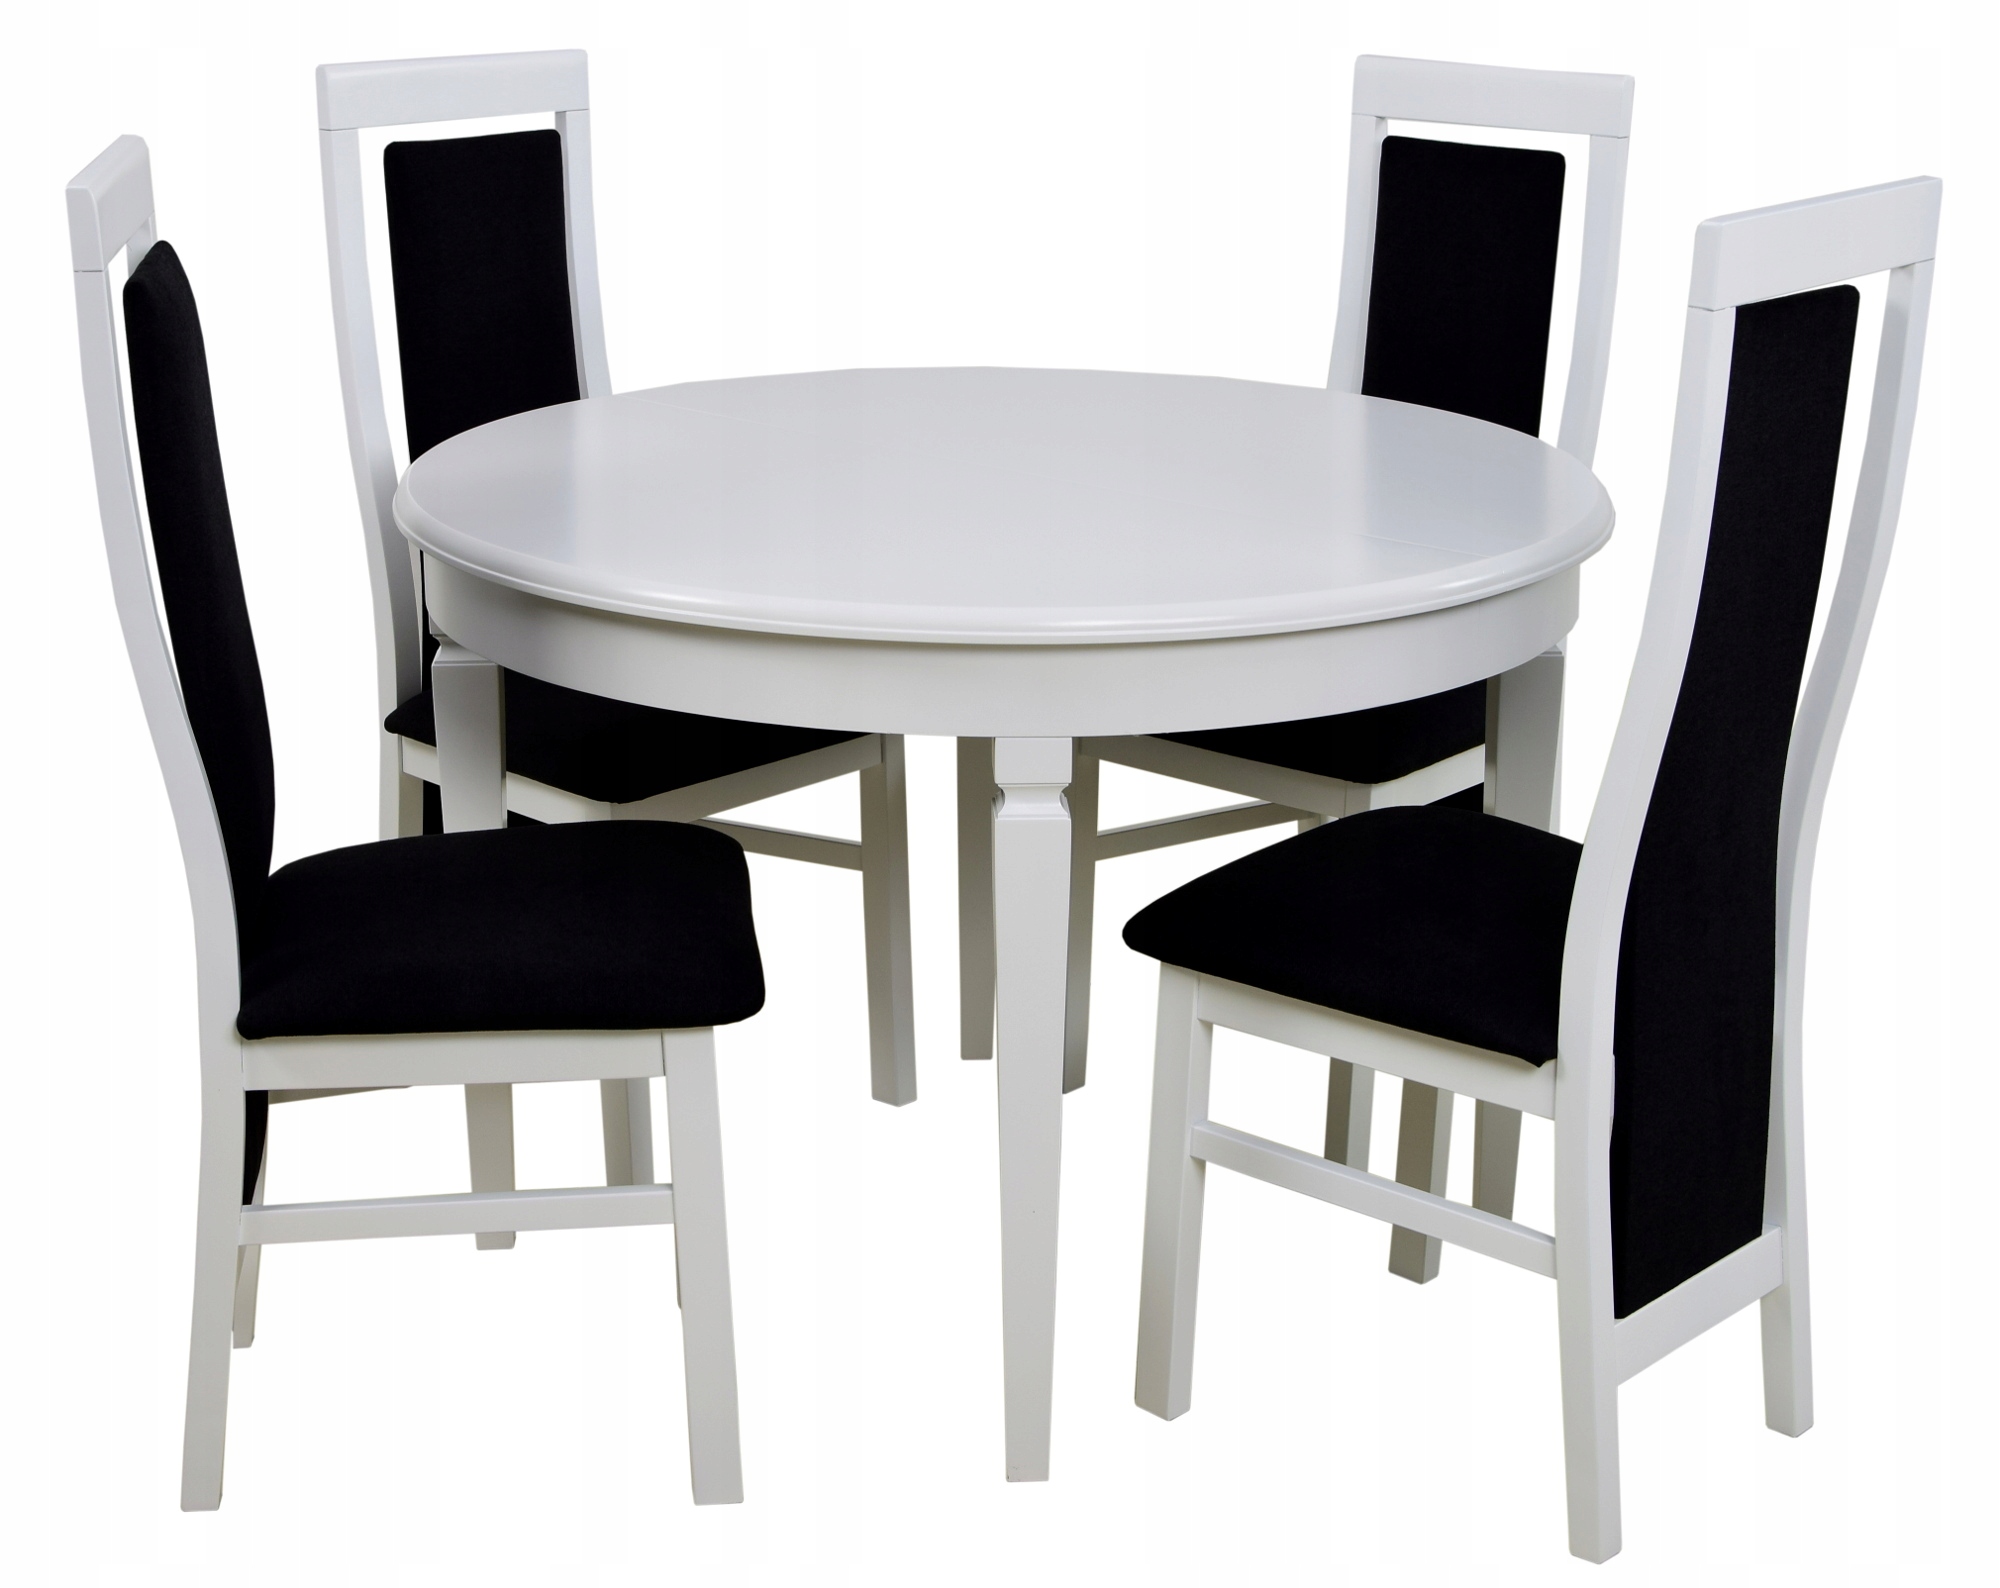 Купить кухонные стулья комплект. Круглый стол Carmelo раздвижной + 4 стула Oklahoma. Круглый белый стол со стульями на кухню. Белый стол и стулья для кухни. Кухонные круглые белые столы и стулья.